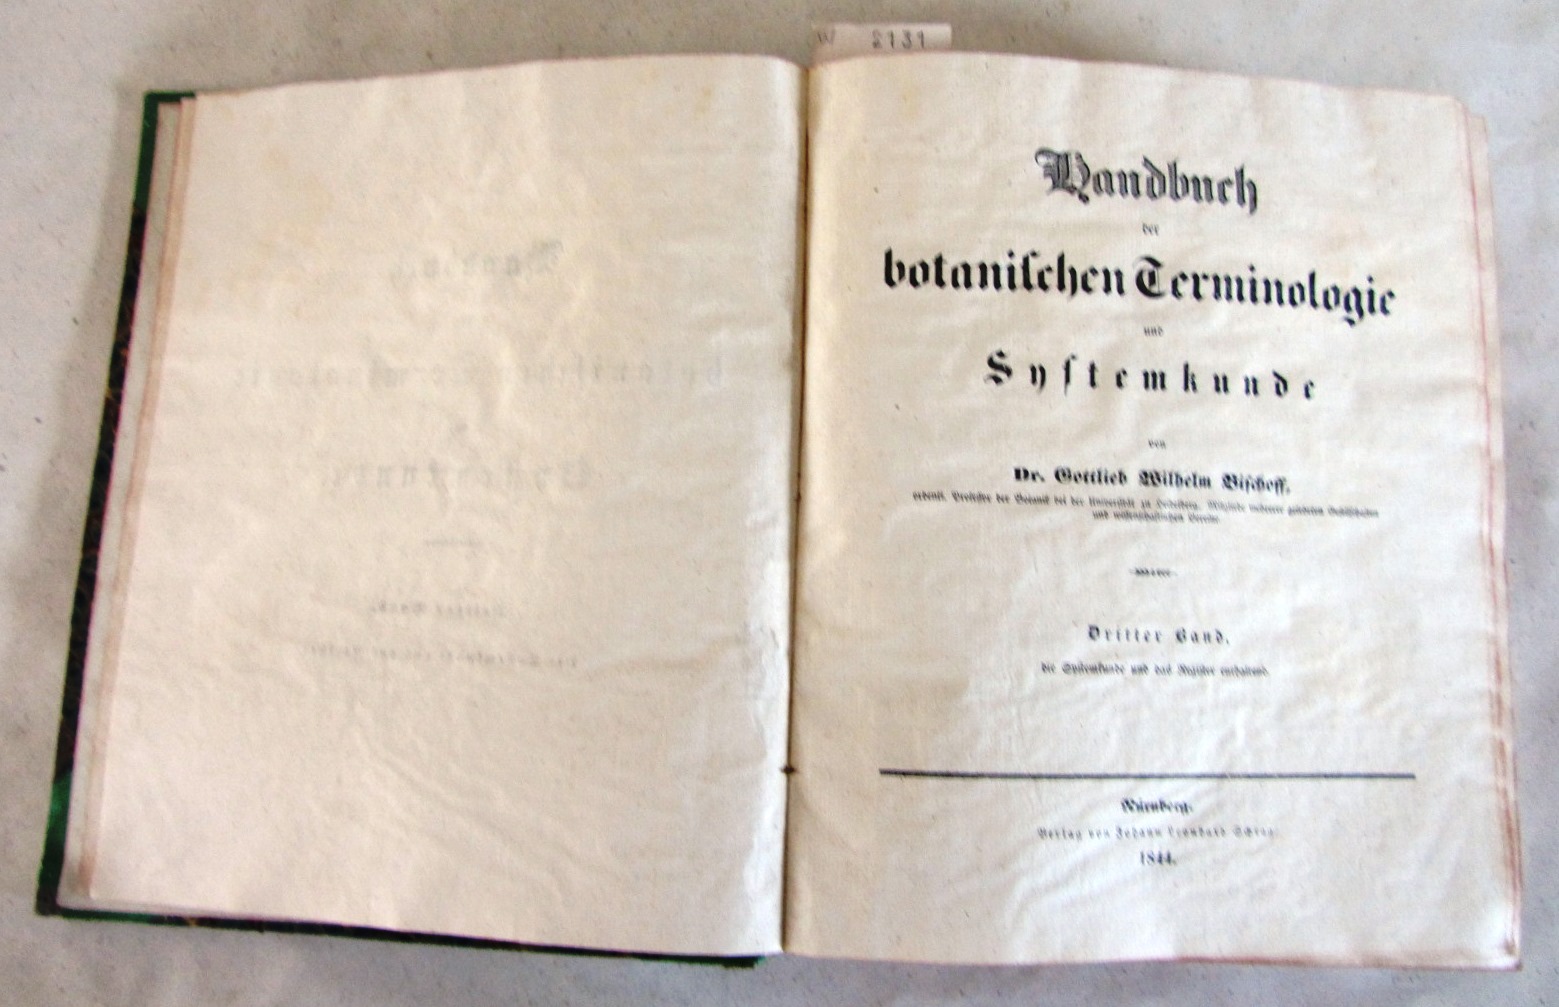 Bischoff, Gottlieb Wilhelm:  Handbuch der botanischen Terminologie und Systemkunde. NUR 3. BAND (von 3), die Systemkunde und das Register enthaltend. Mit den Tafeln LIX-LXXVII samt Erklärungen. 